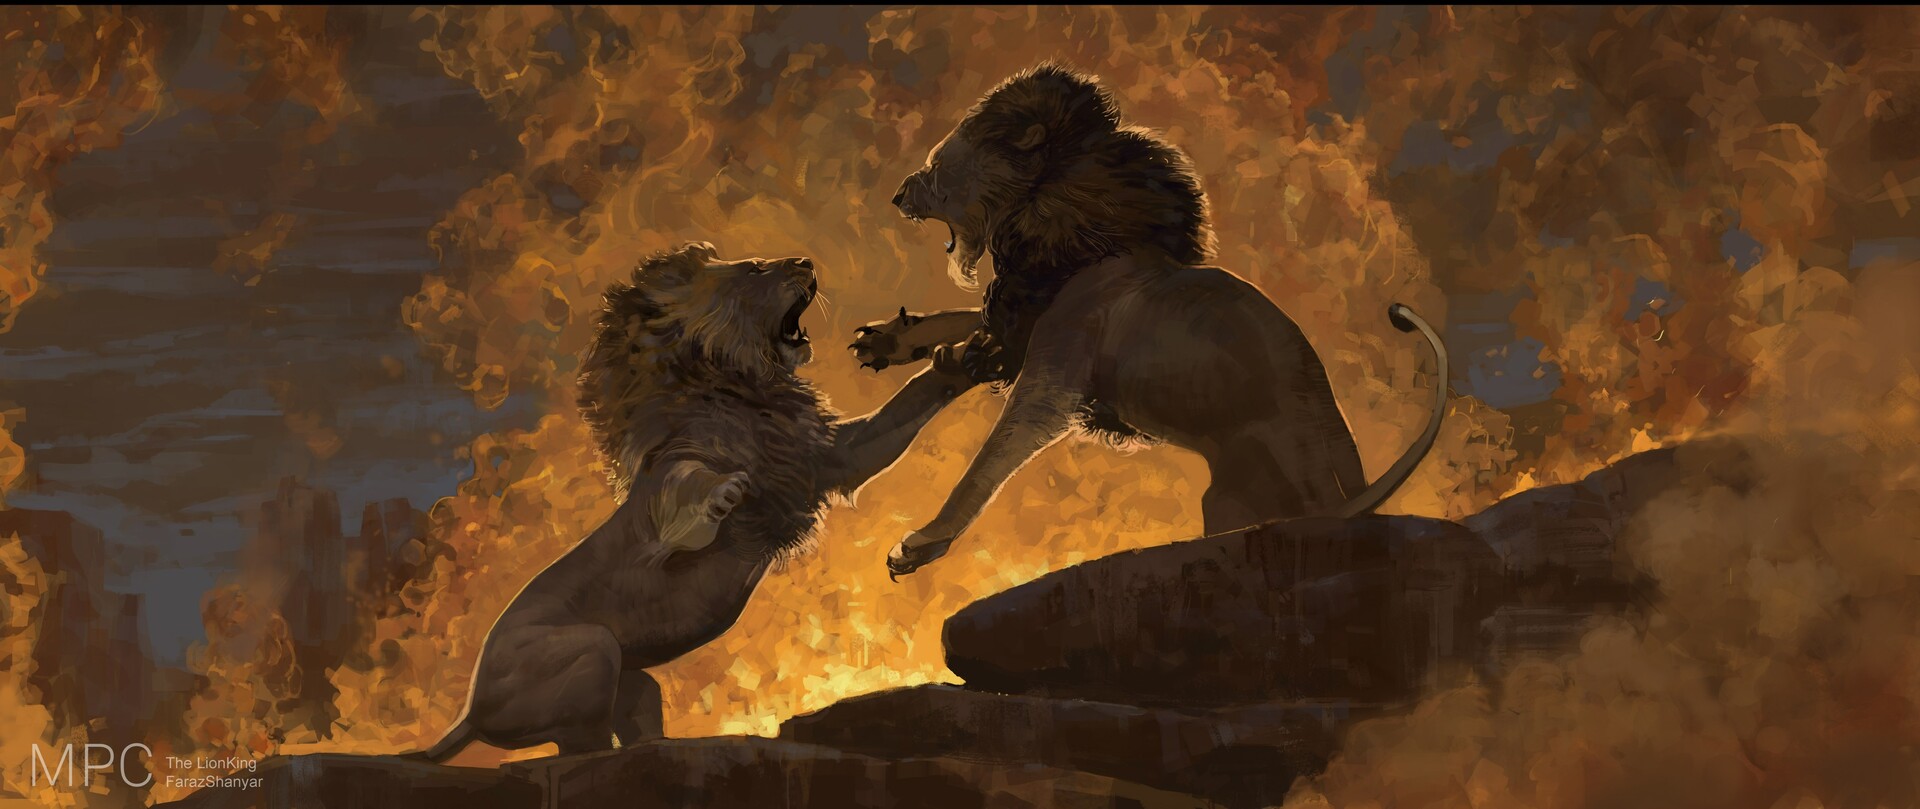 TheLionKing - Le Roi Lion [Disney - 2019] - Page 31 Faraz-shanyar-70ca9f38-7a30-4ff3-9dab-0c4eec012acc